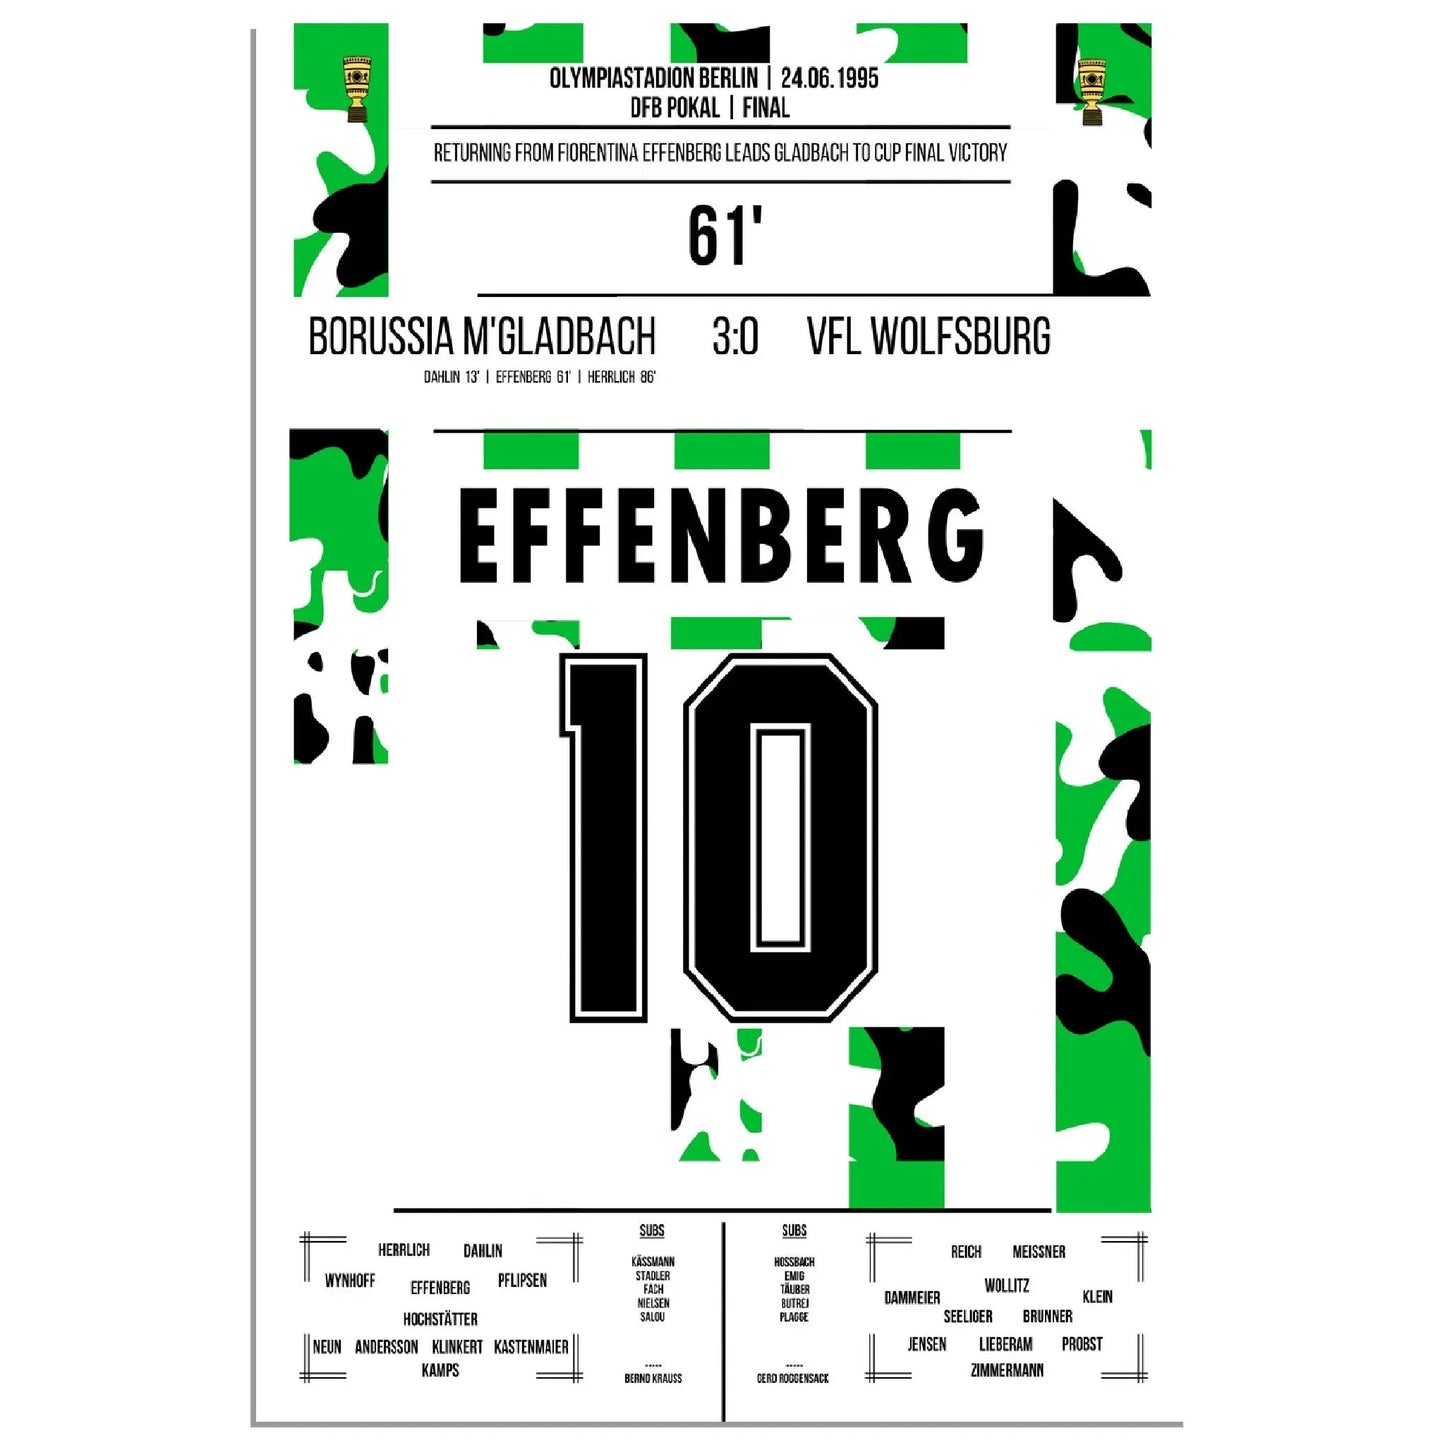 Effenberg zum 2:0 bei DFB Pokalsieg gegen Wolfsburg 1995 